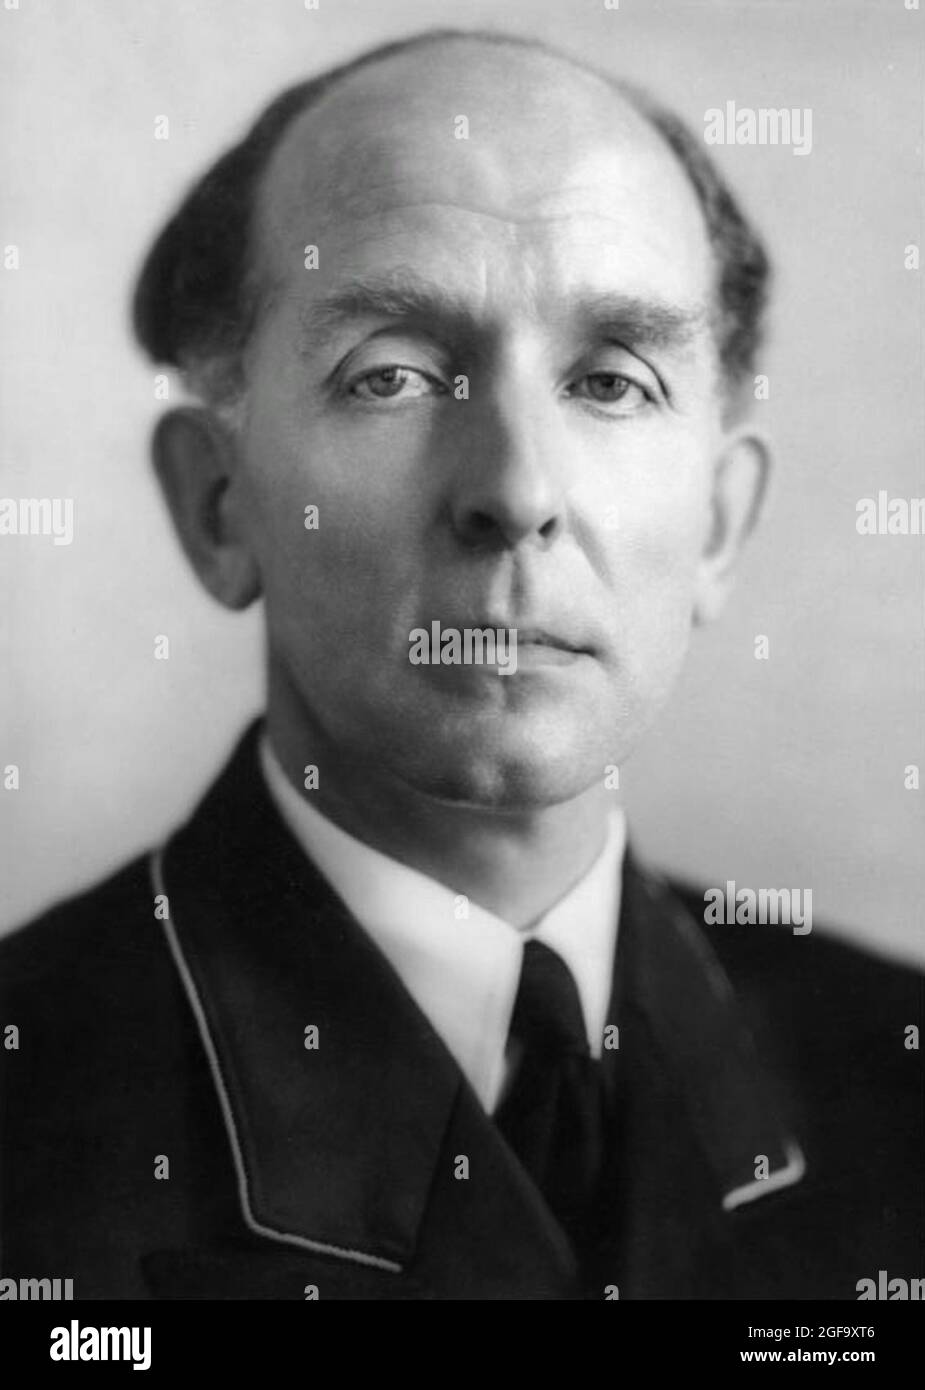 Le juge et chef nazi Roland Freisler, qui était ministre de Reich pour la justice et président de la Cour populaire. Il a été tué lors d'un raid aérien à Berlin en février 1945. Crédit: Bundesarchiv allemand Banque D'Images